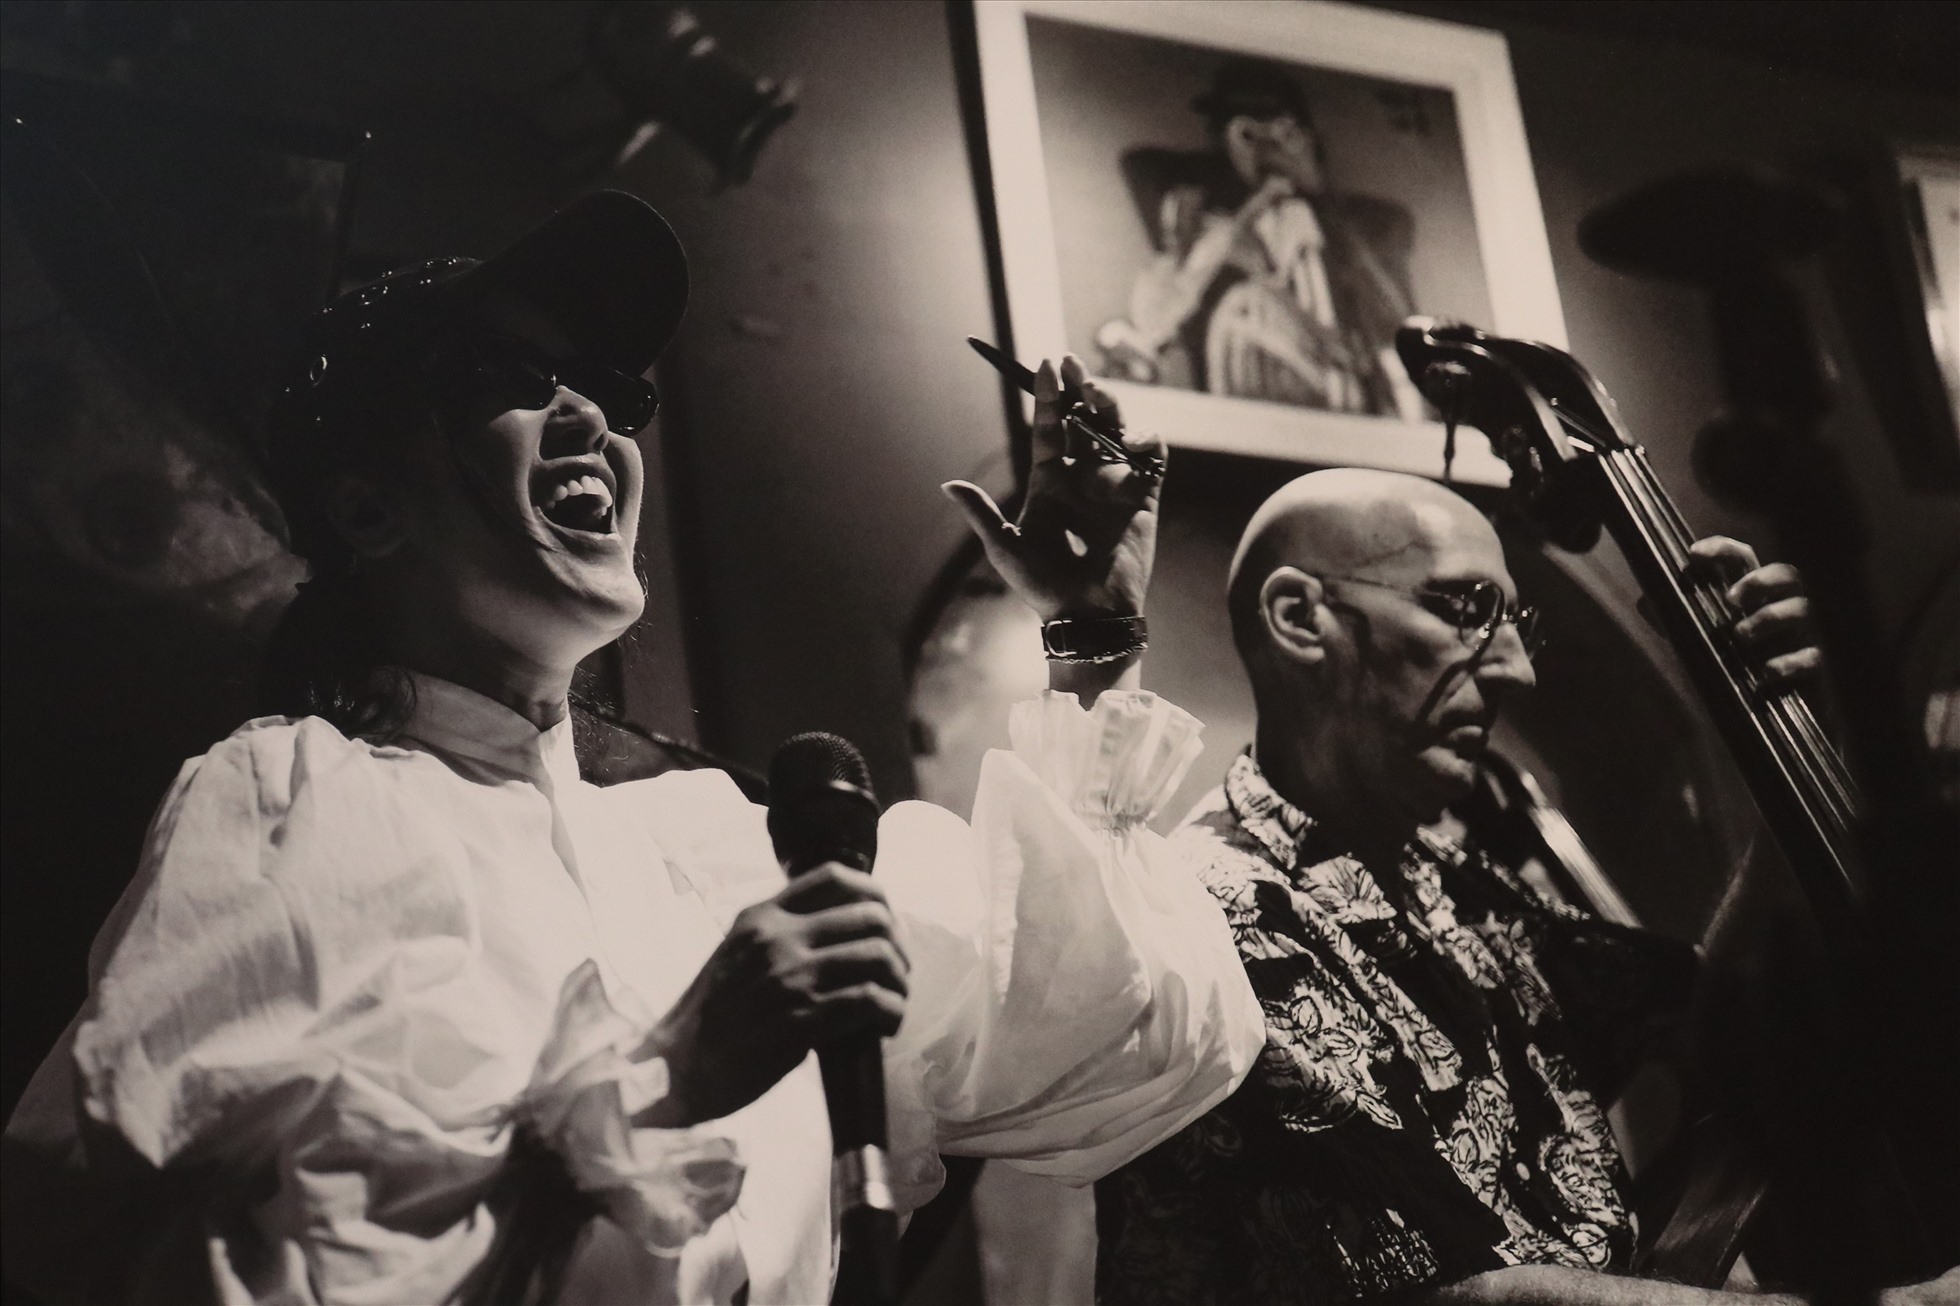 Bên cạnh đó, triển lãm còn trưng bày những hình ảnh tại live concert “Bống là ai?” của ca sĩ Hồng Nhung diễn ra trong thời gian qua. Ở tuổi 53, Hồng Nhung vẫn được khán giả yêu thích nhờ giọng hát nội lực nhưng không kém phần cảm xúc.